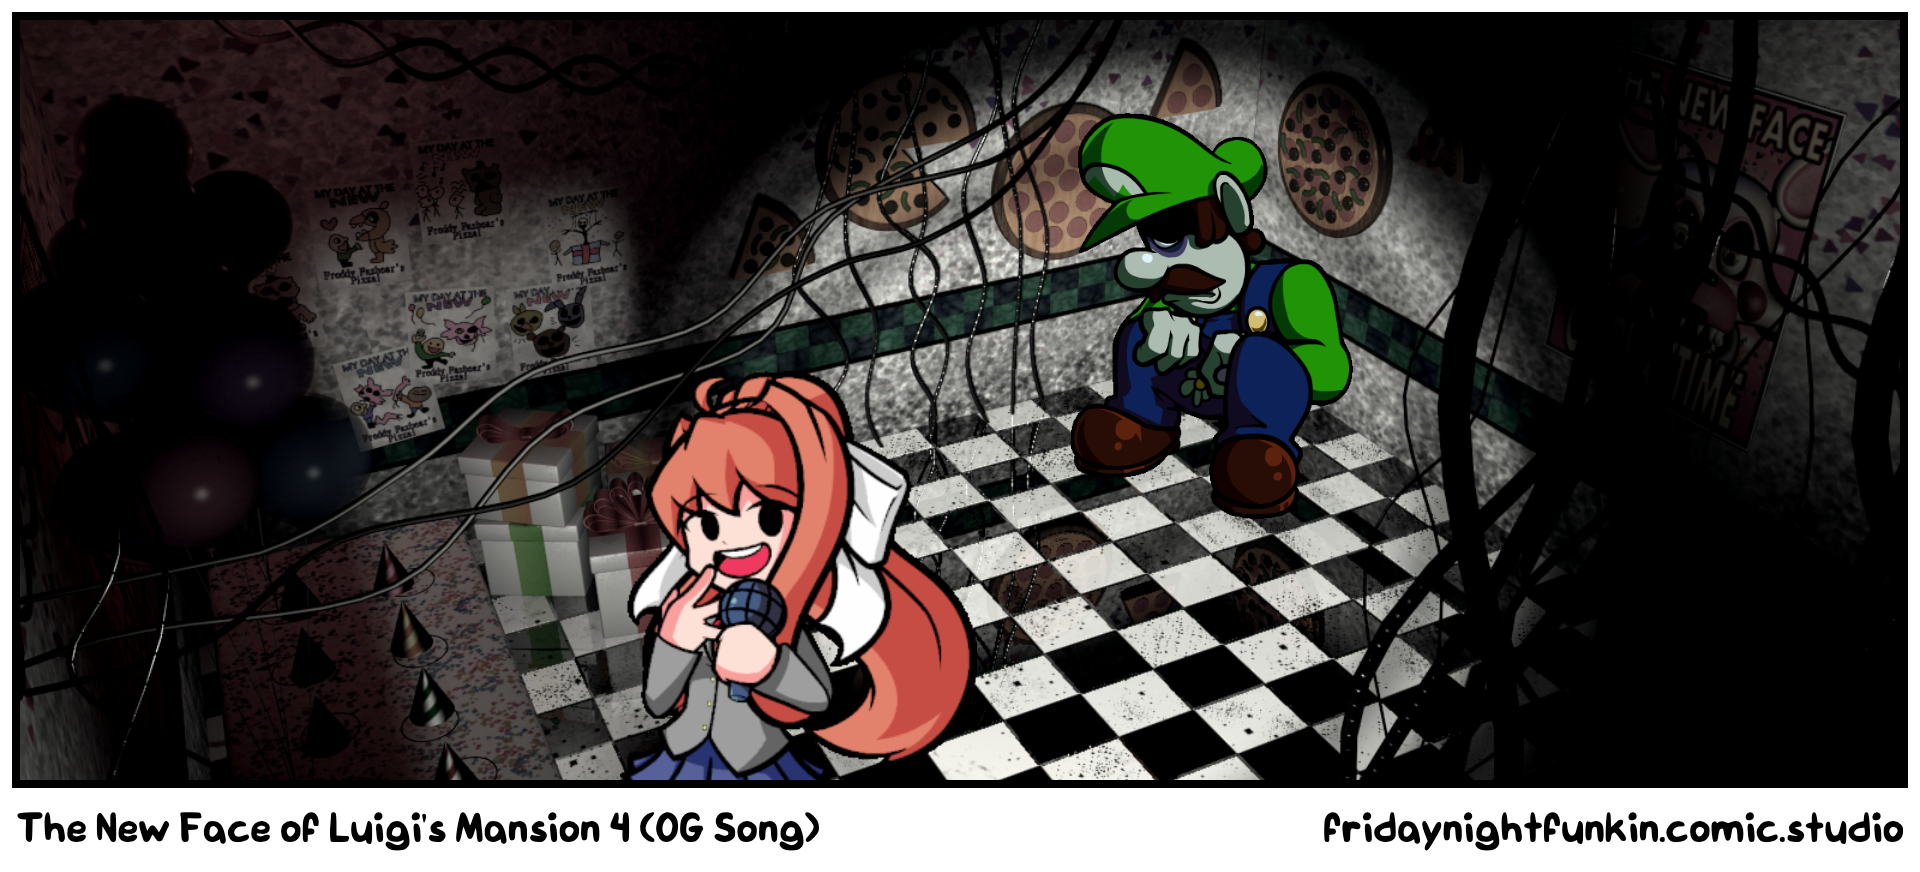 The New Face of Luigi's Mansion 4 (OG Song)